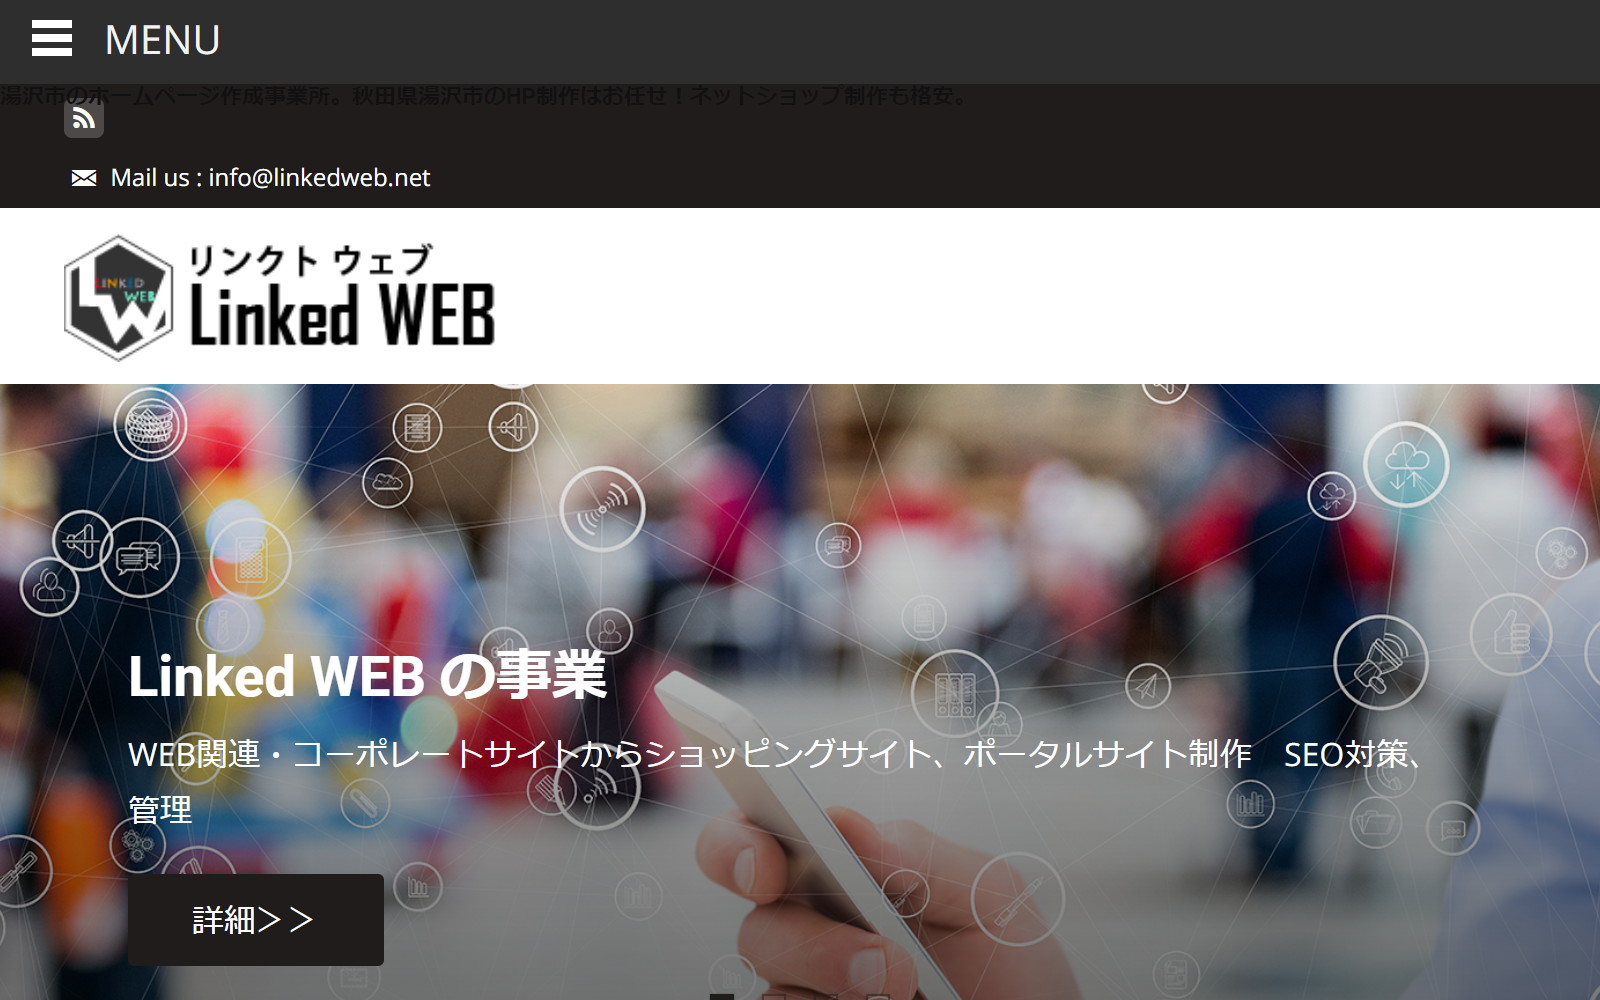 Linked WEB